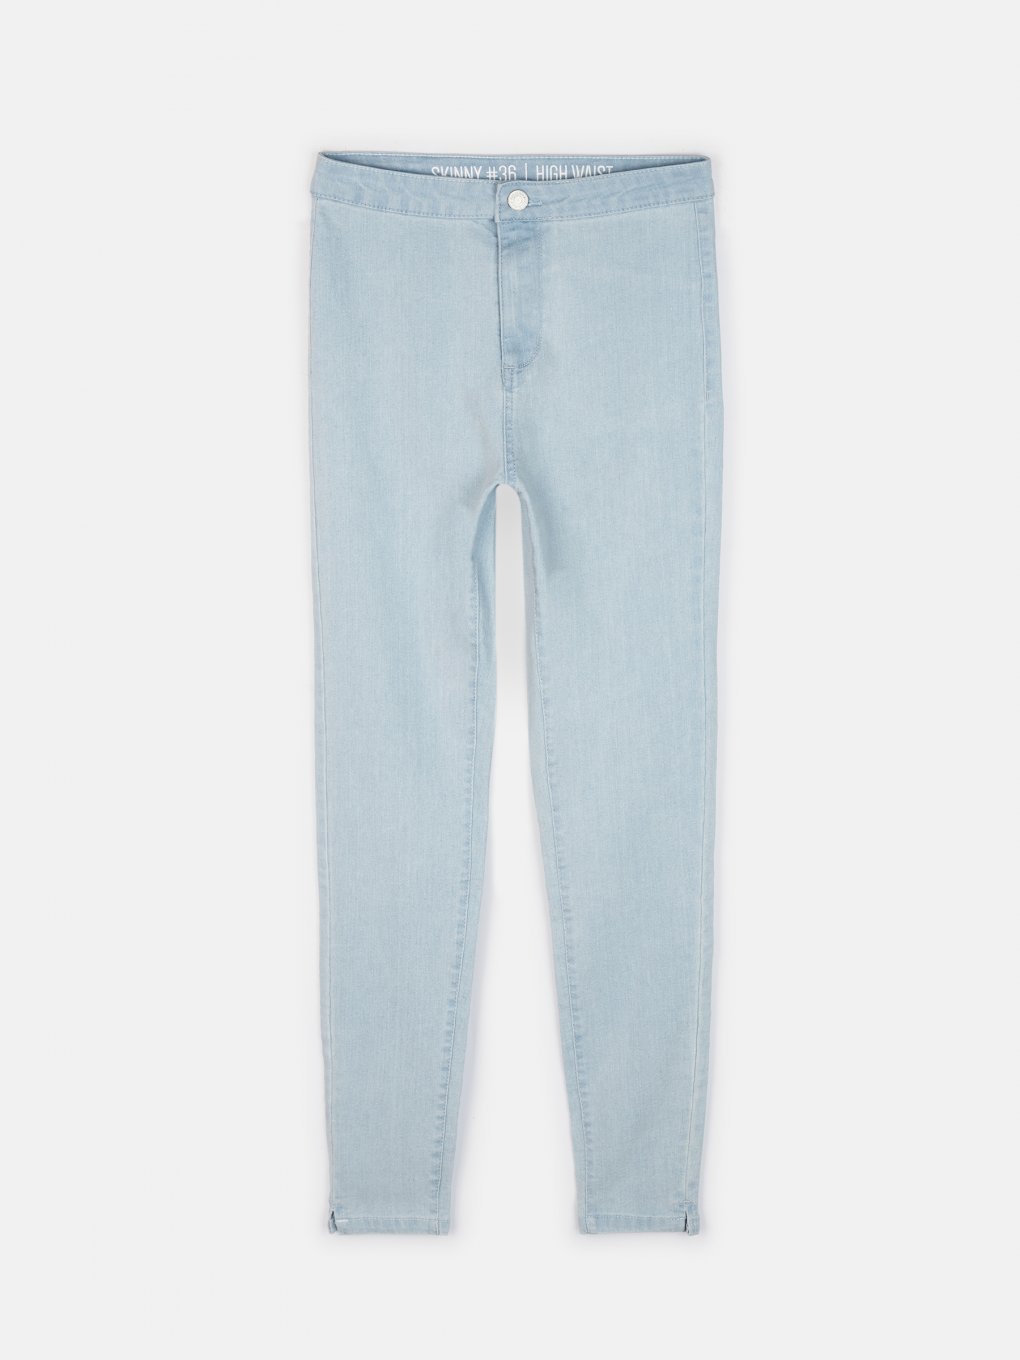 Zara shorts jeans discount 77% WOMEN FASHION Jeans Shorts jeans Basic White 36                  EU 